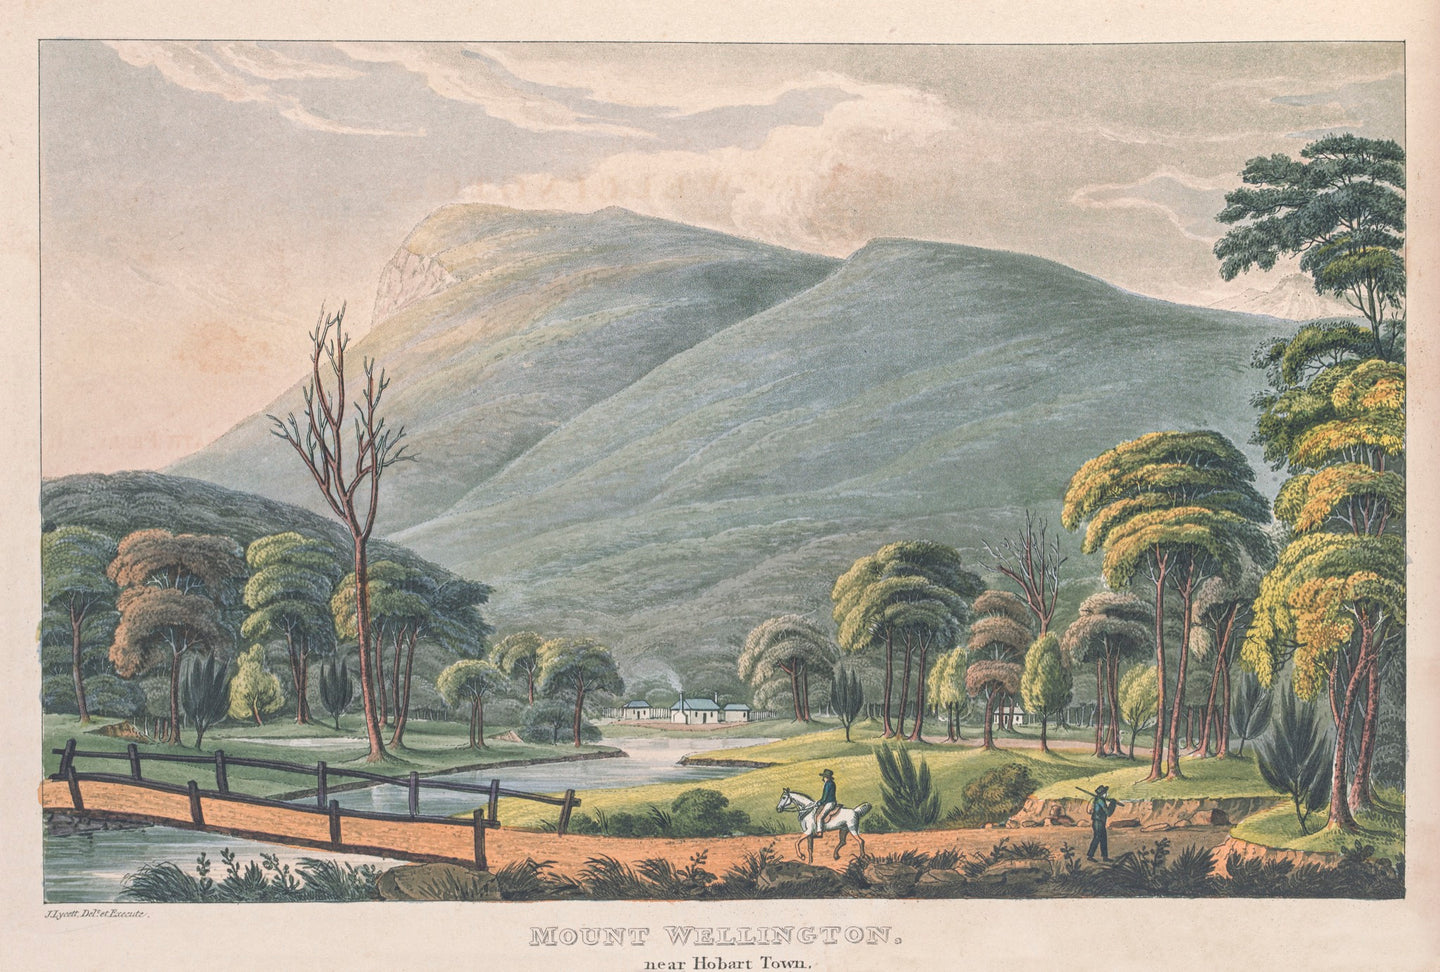 Mount Wellington near Hobart Town, Van Diemen's Land